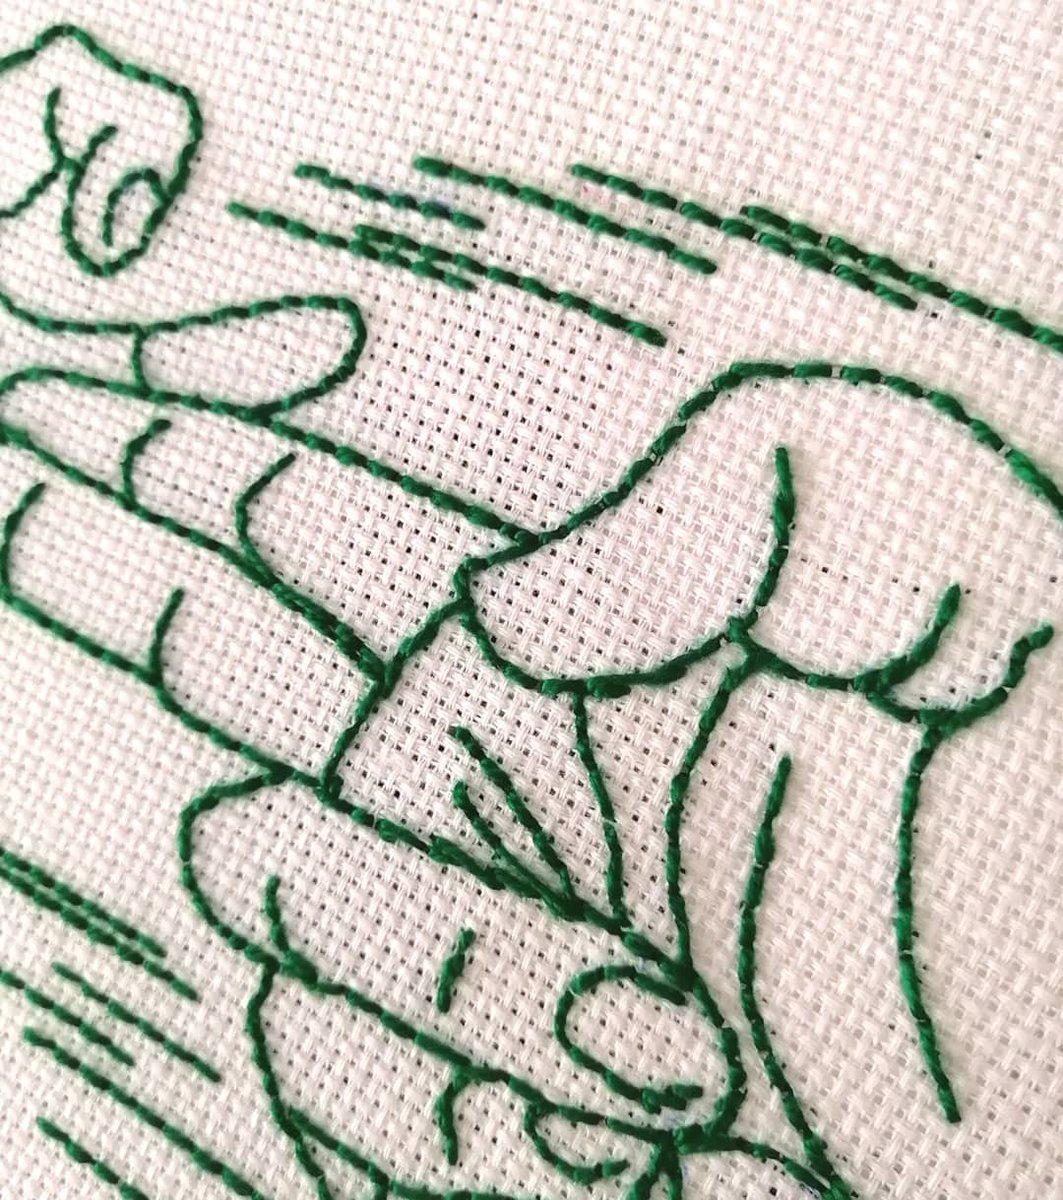 'PUM!' (tela sobre bastidor de 27cm).
#bastidor #bordado #bordadodibujado #sewingproject #clarasoriano #sewing #monocolor #pulse #green #embroidery #embroideryart #embroiderersofinstagram #embroideryartist #hands #sewinghands #diy #diydecor #clarasoriano